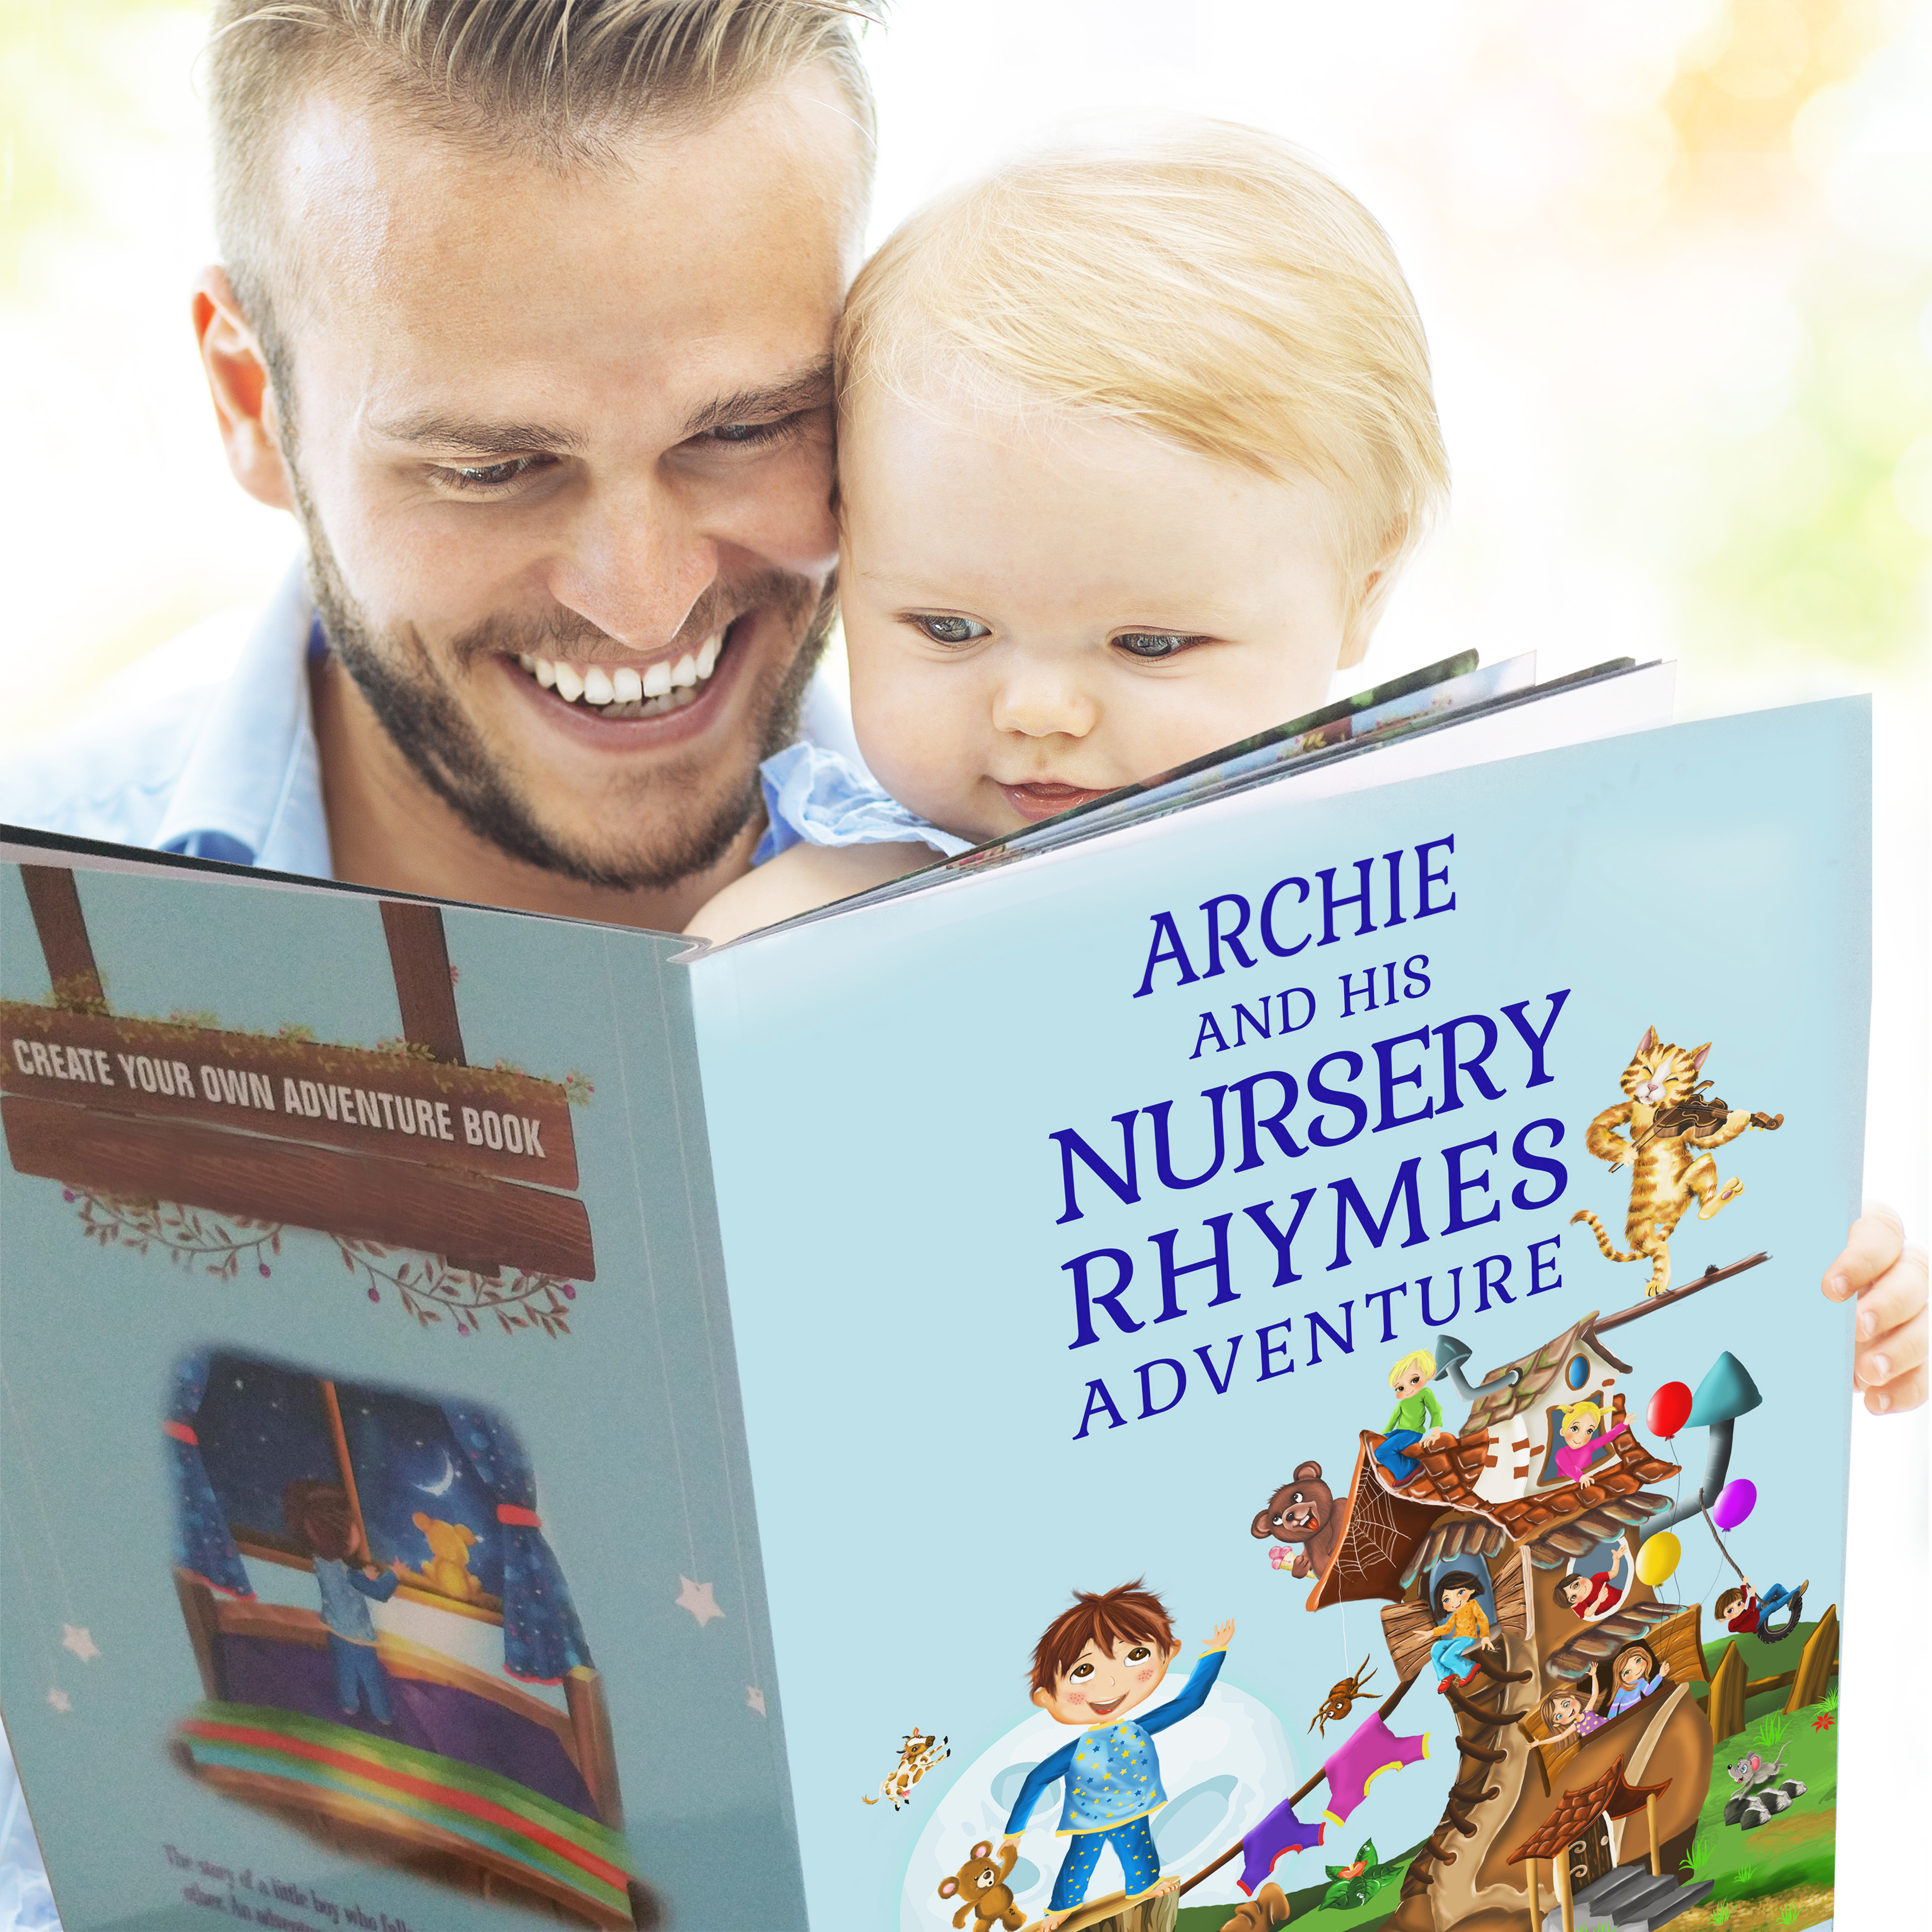 Personalised Children's Book - Nursery Rhymes